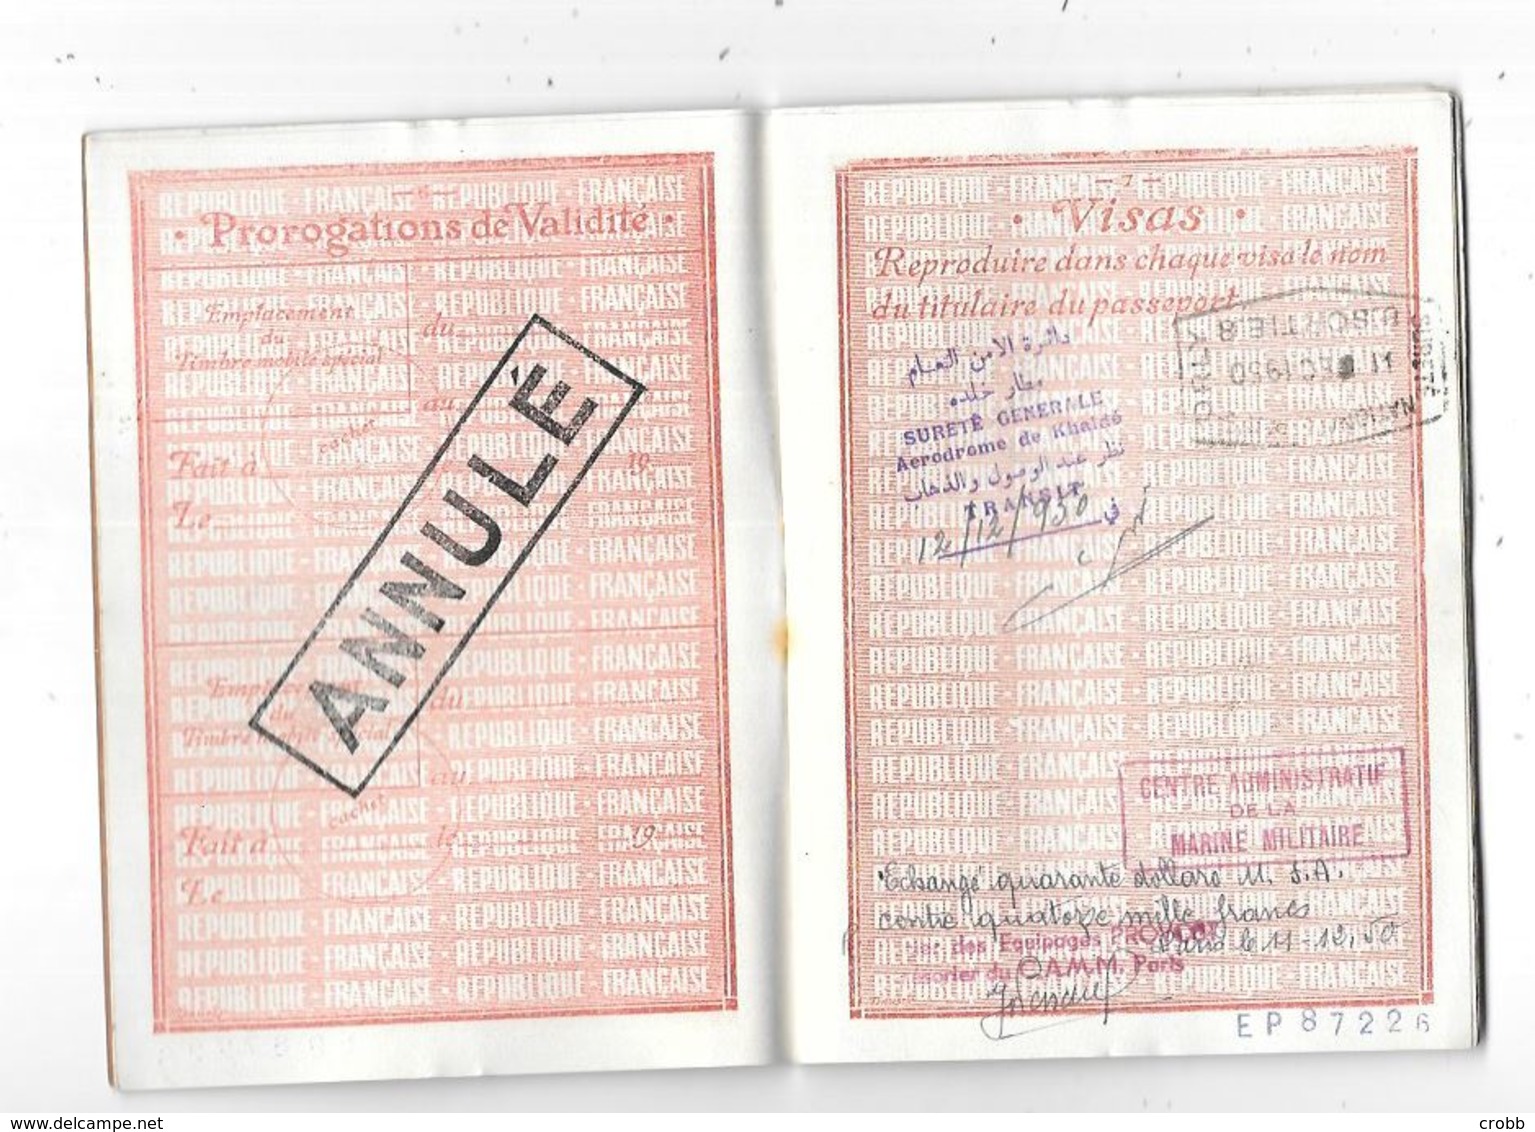 Passeport Francais Délivré En 1950 - Historical Documents